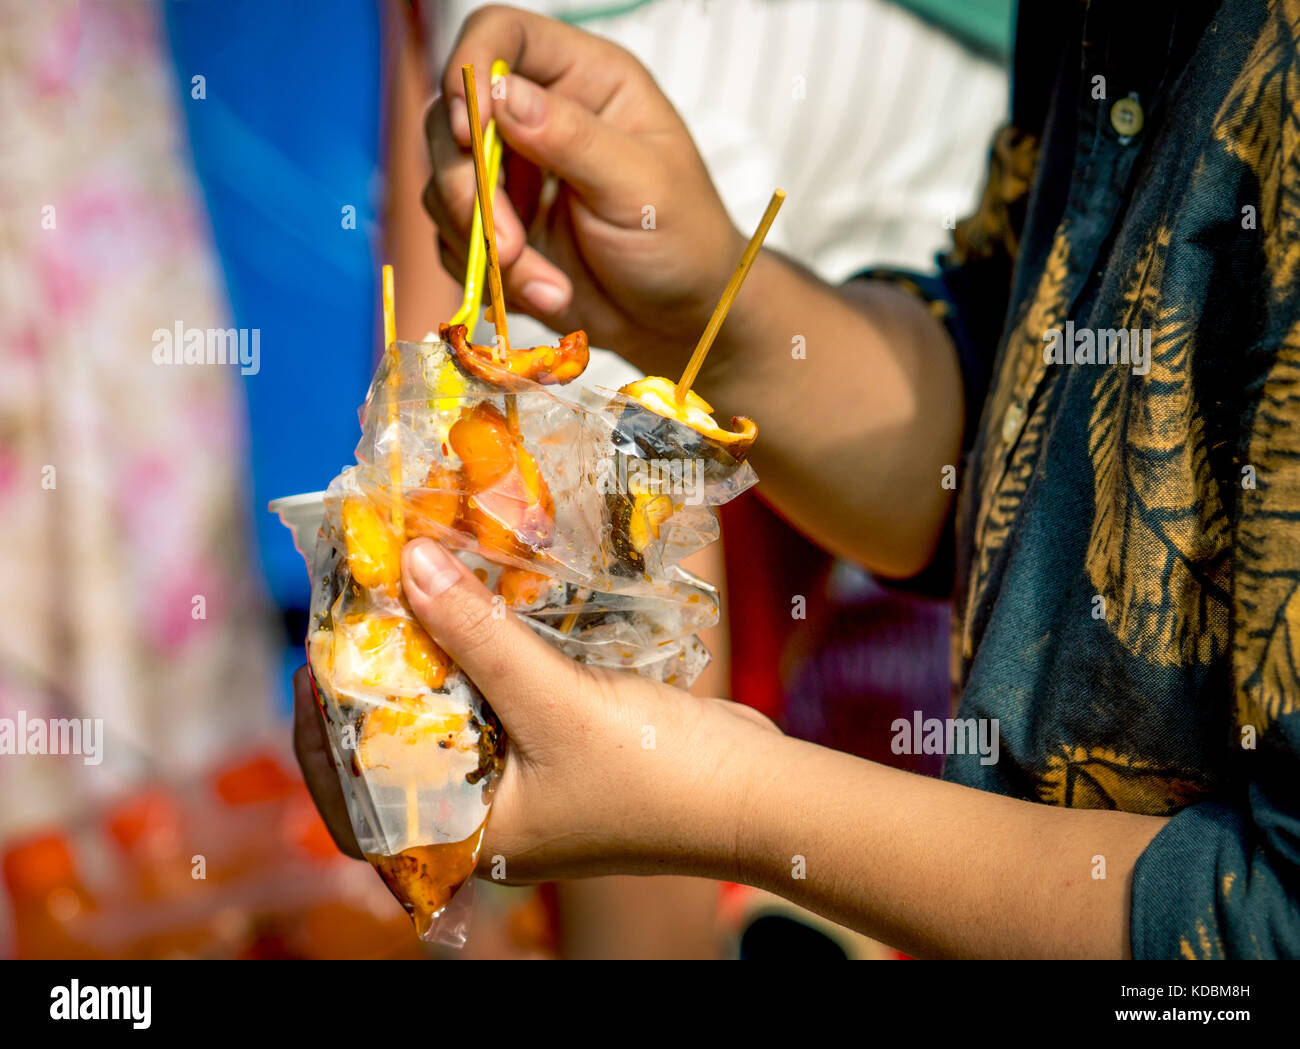 Le donne stanno mangiando calamari arrosto con salsa di frutti di mare nel sacchetto di plastica trasparente lungo con gelato in una tazza di plastica Foto Stock